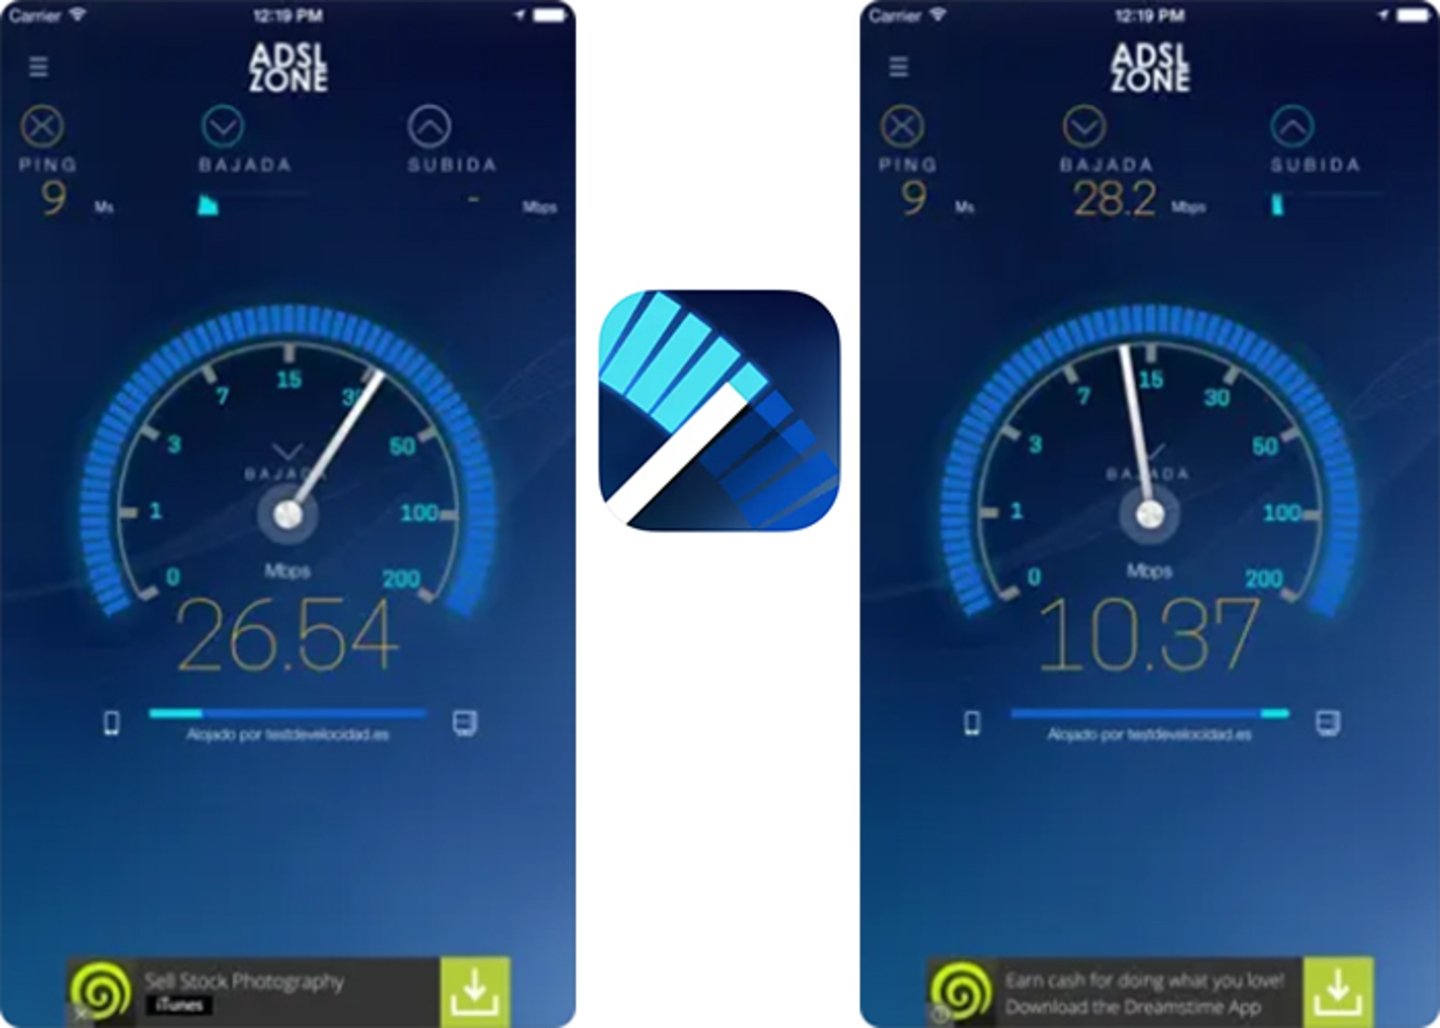 Descubre la potencia de tu conexion con la app Test de Velocidad